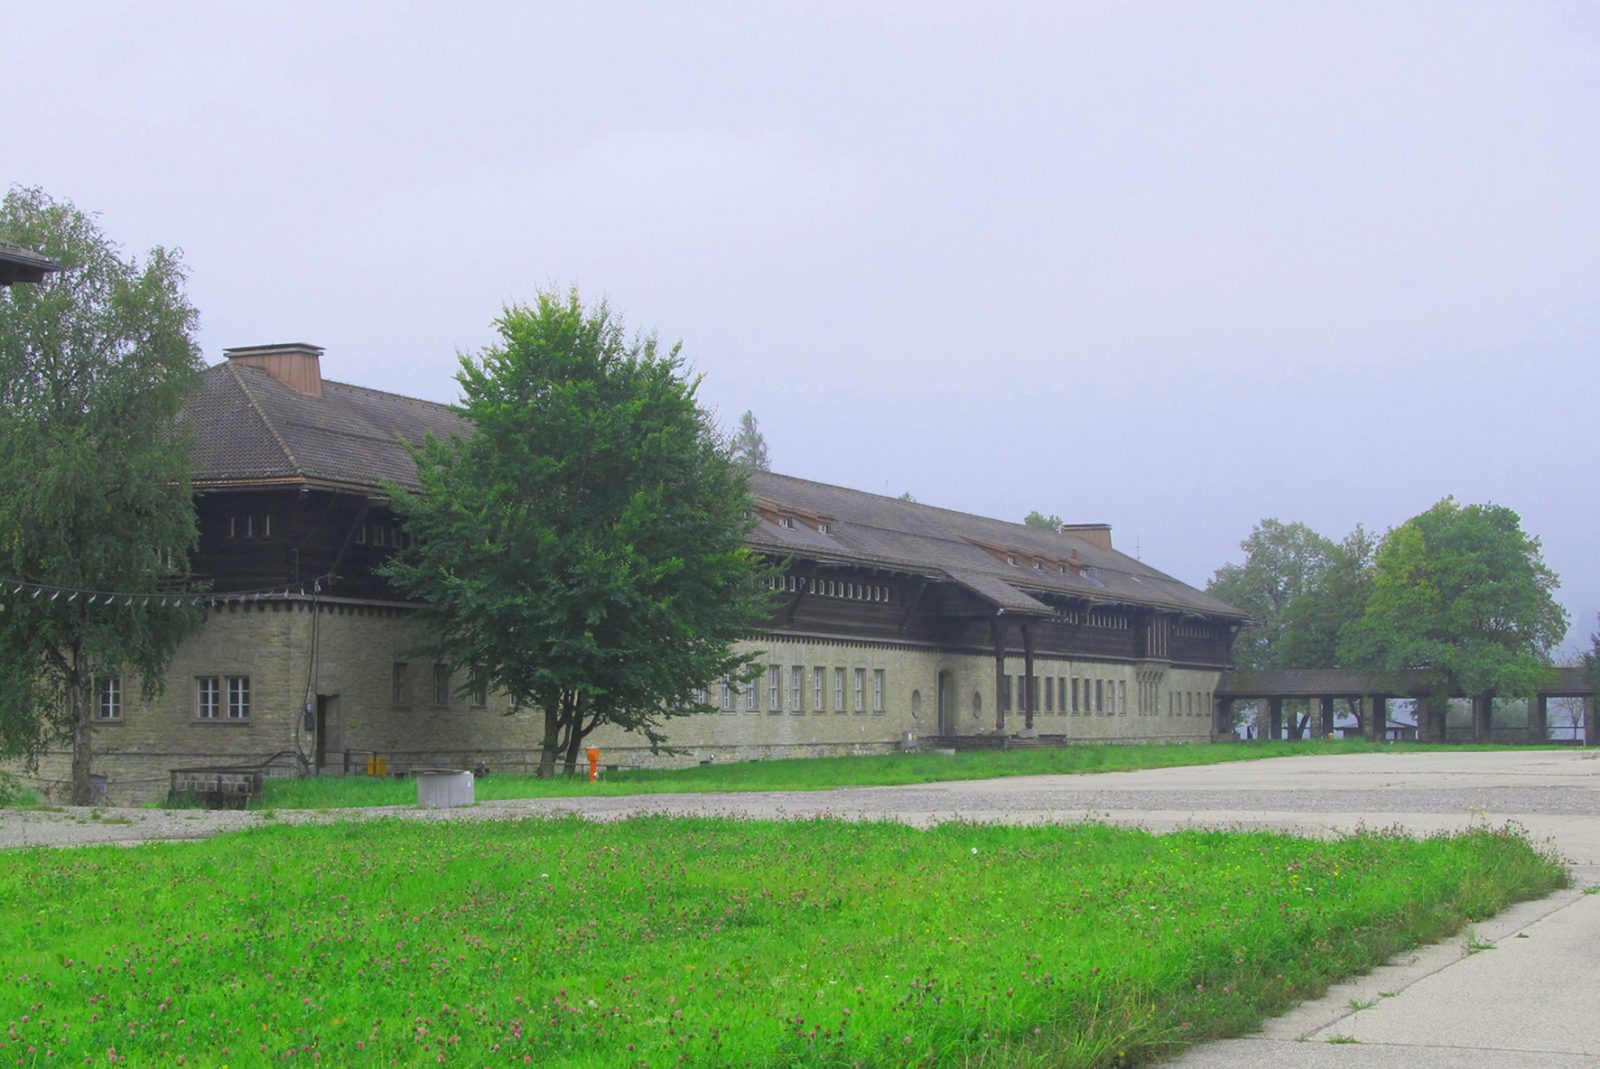 GOB-Kaserne Sonthofen, Generalsanierung